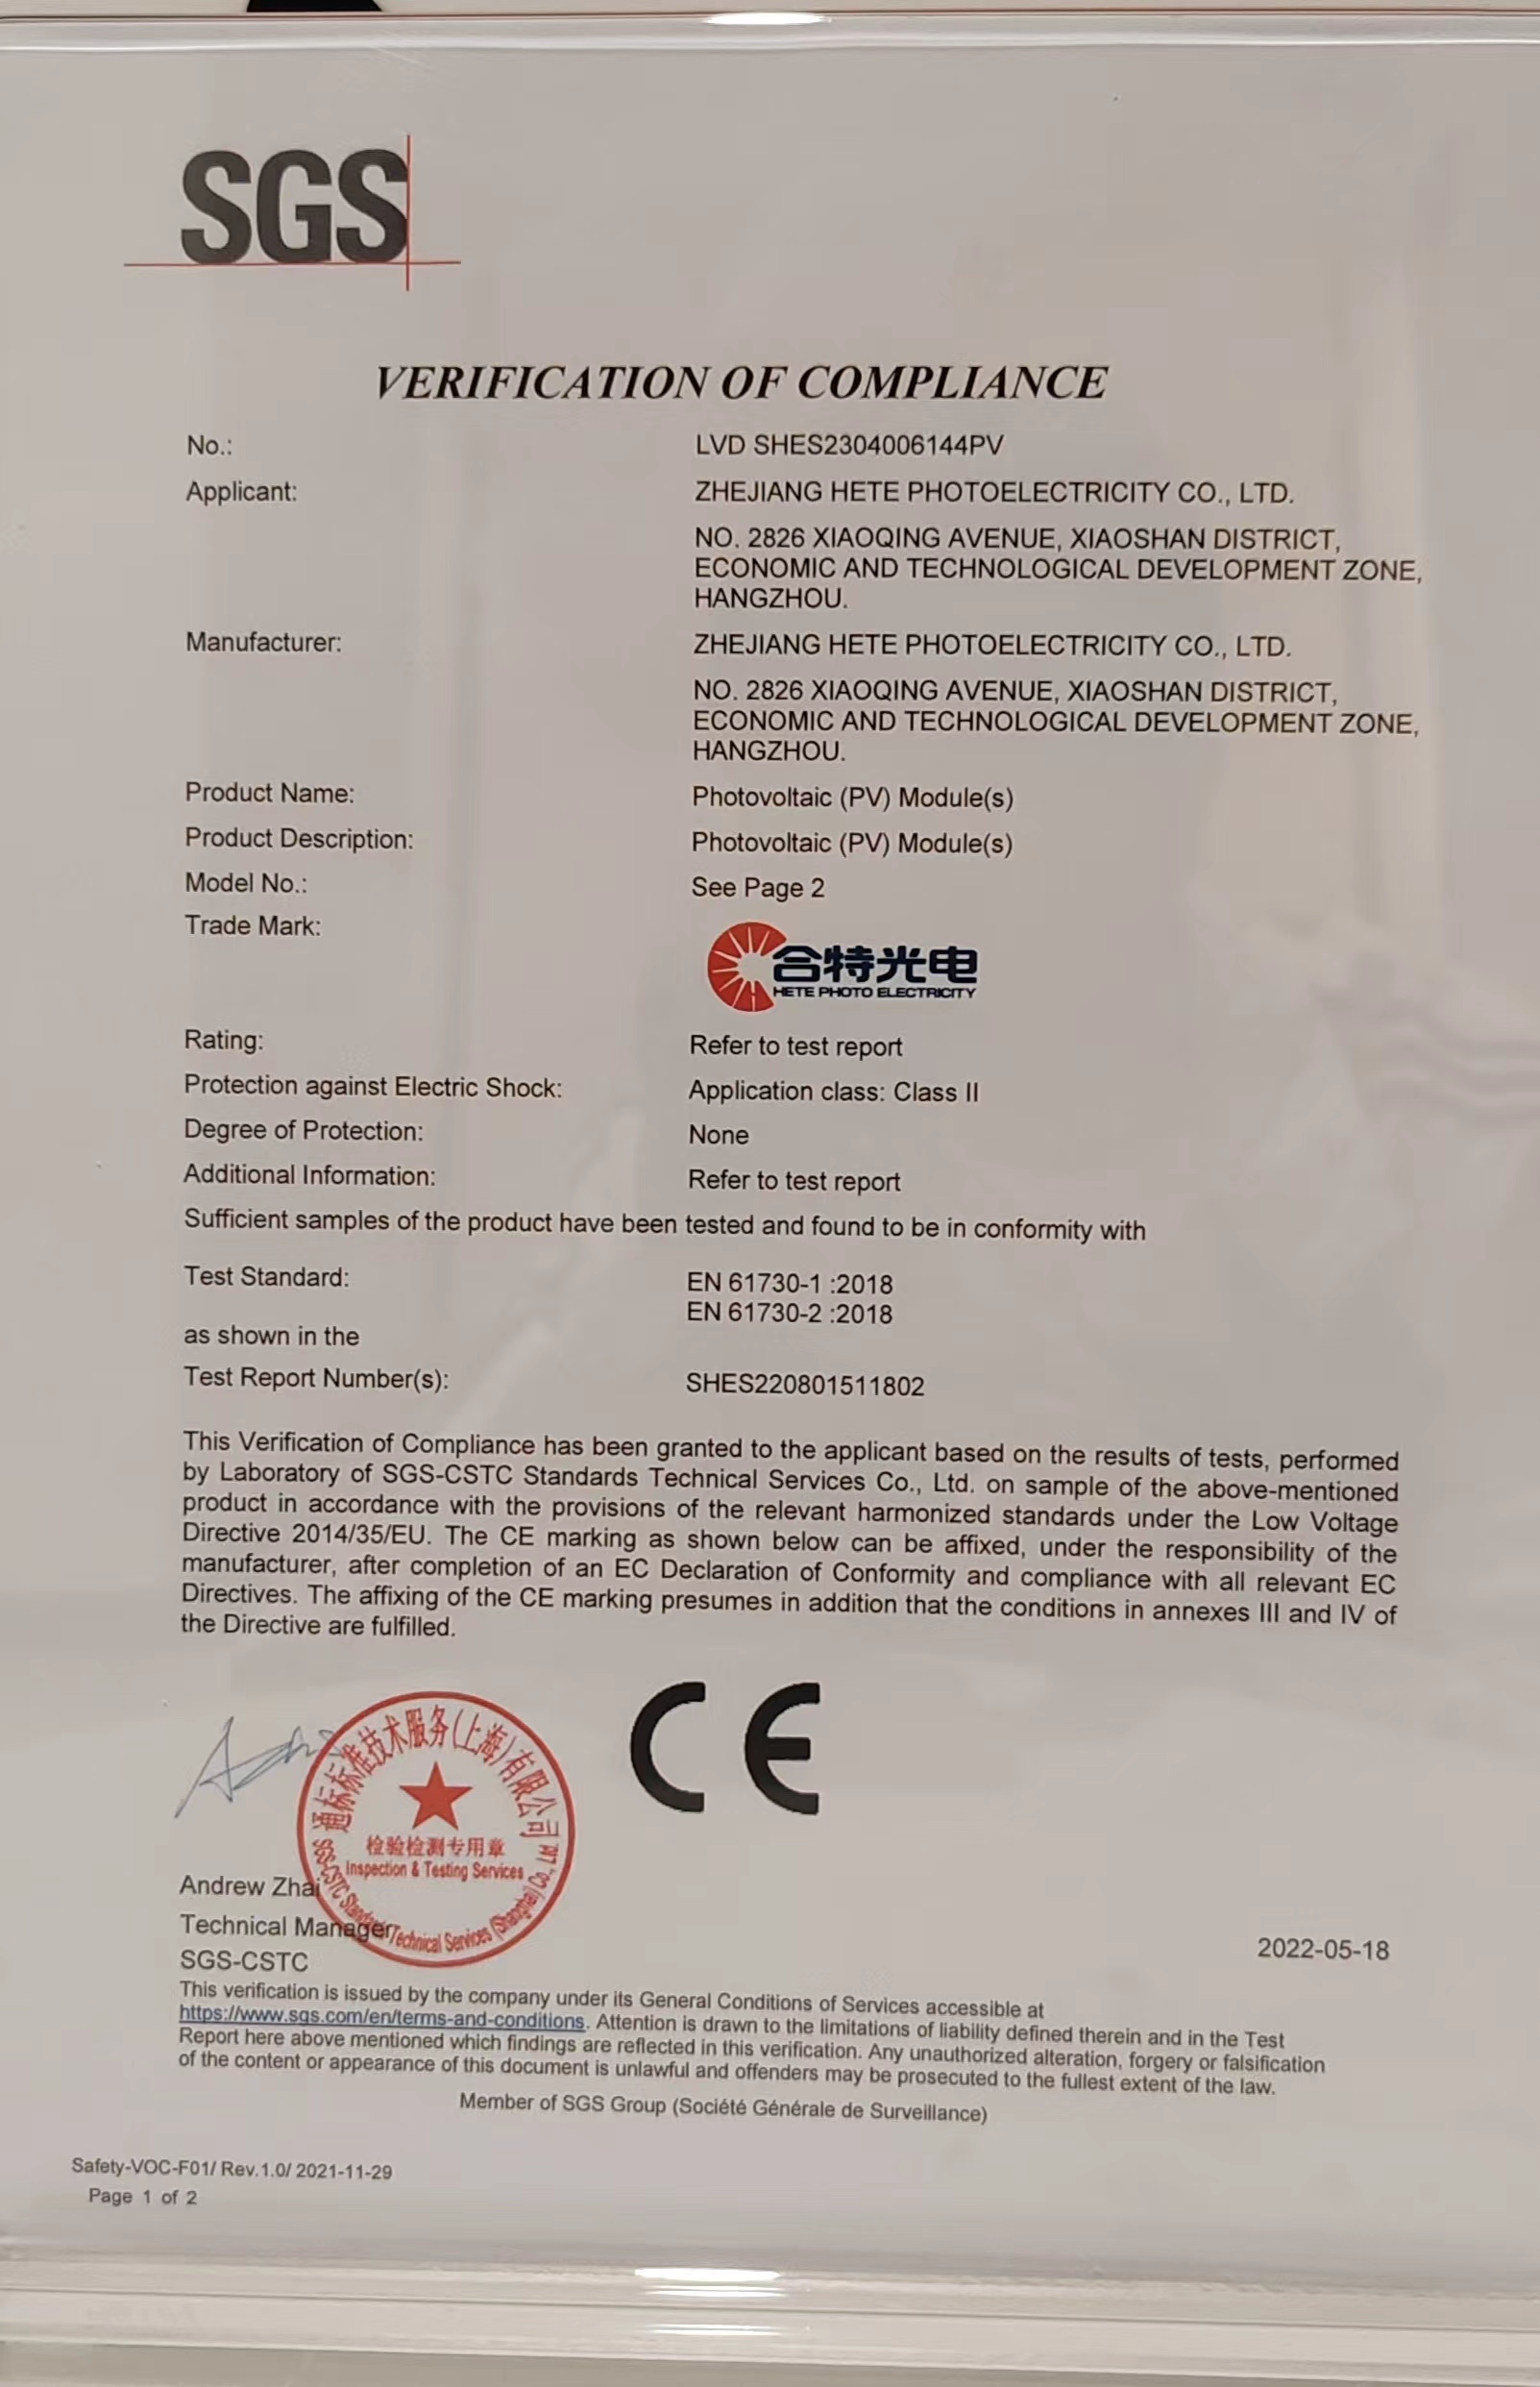 浙江合特光电有限公司获得CE认证证书